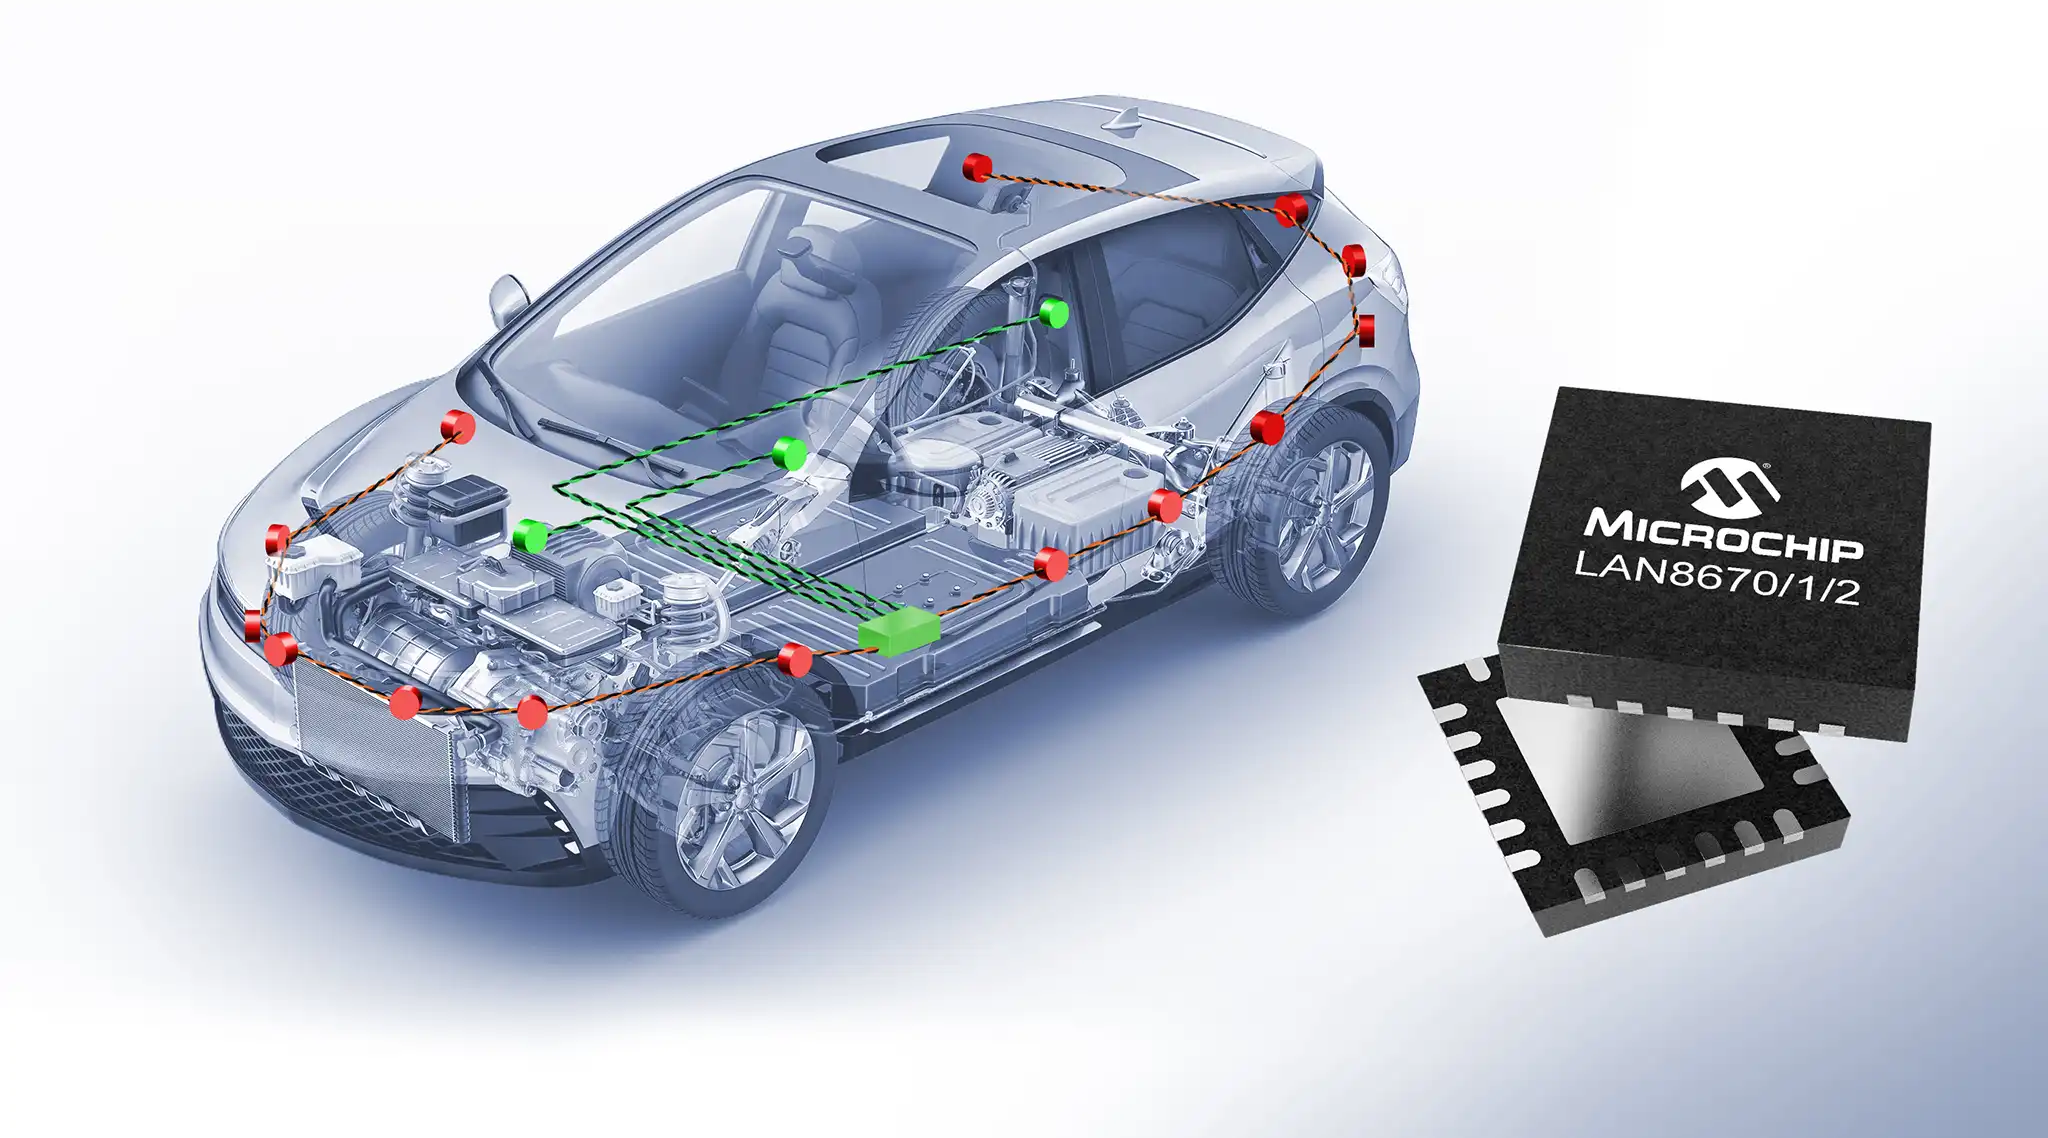 Microchip giới thiệu các thiết bị Ethernet 10BASE-T1S đầu tiên đáp ứng tiêu chuẩn sử dụng trên ô tô